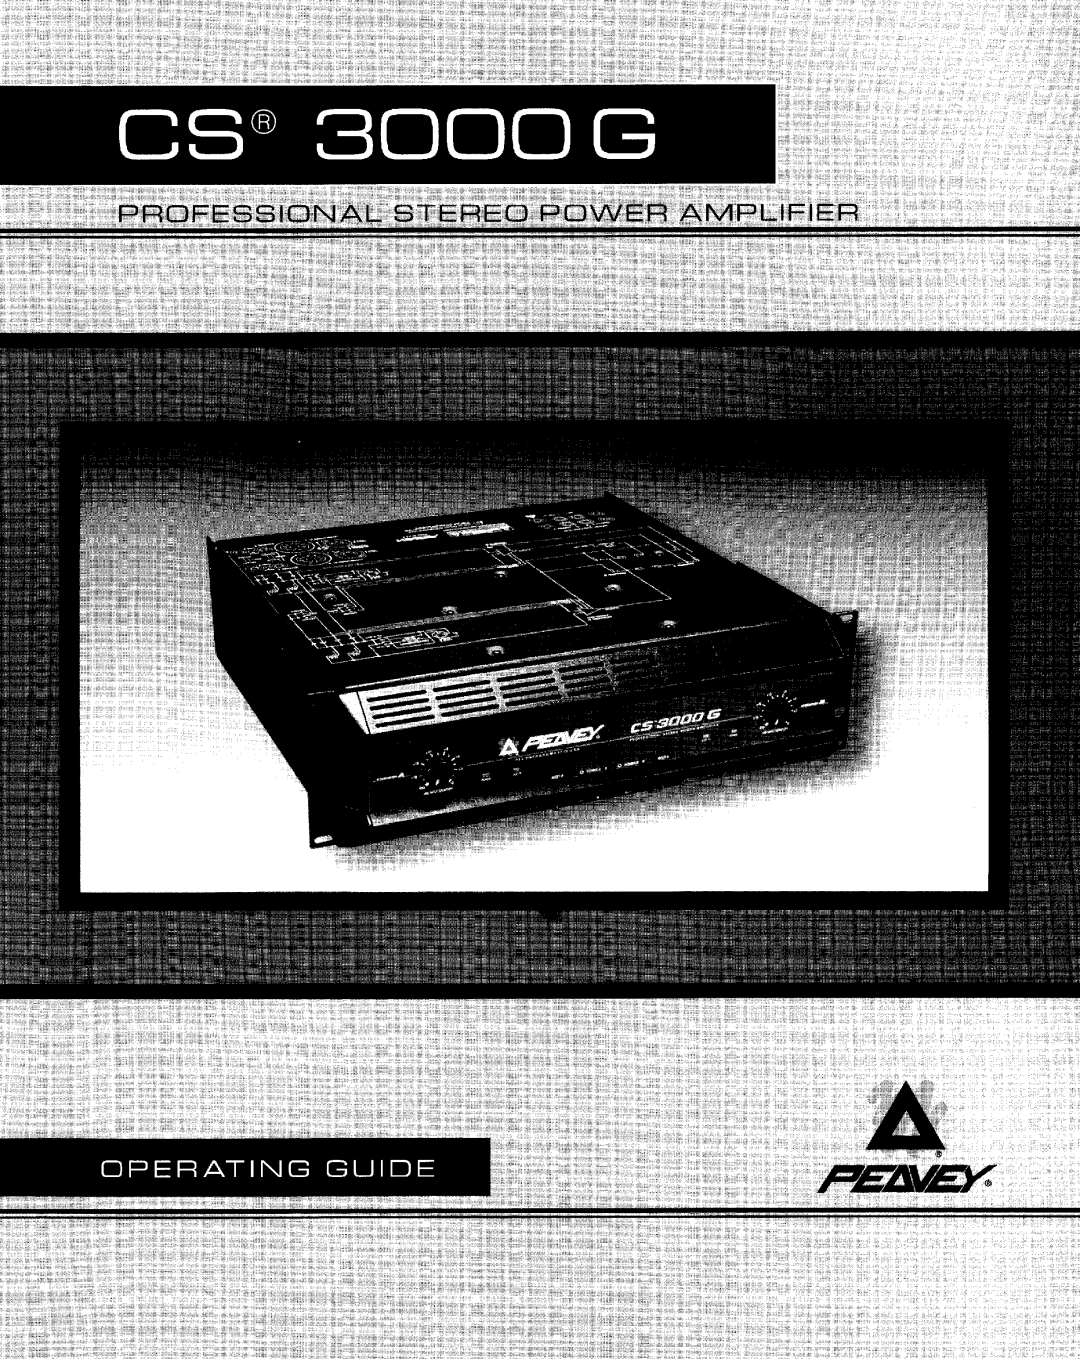 Peavey CS 3000G, CS-G series manual 